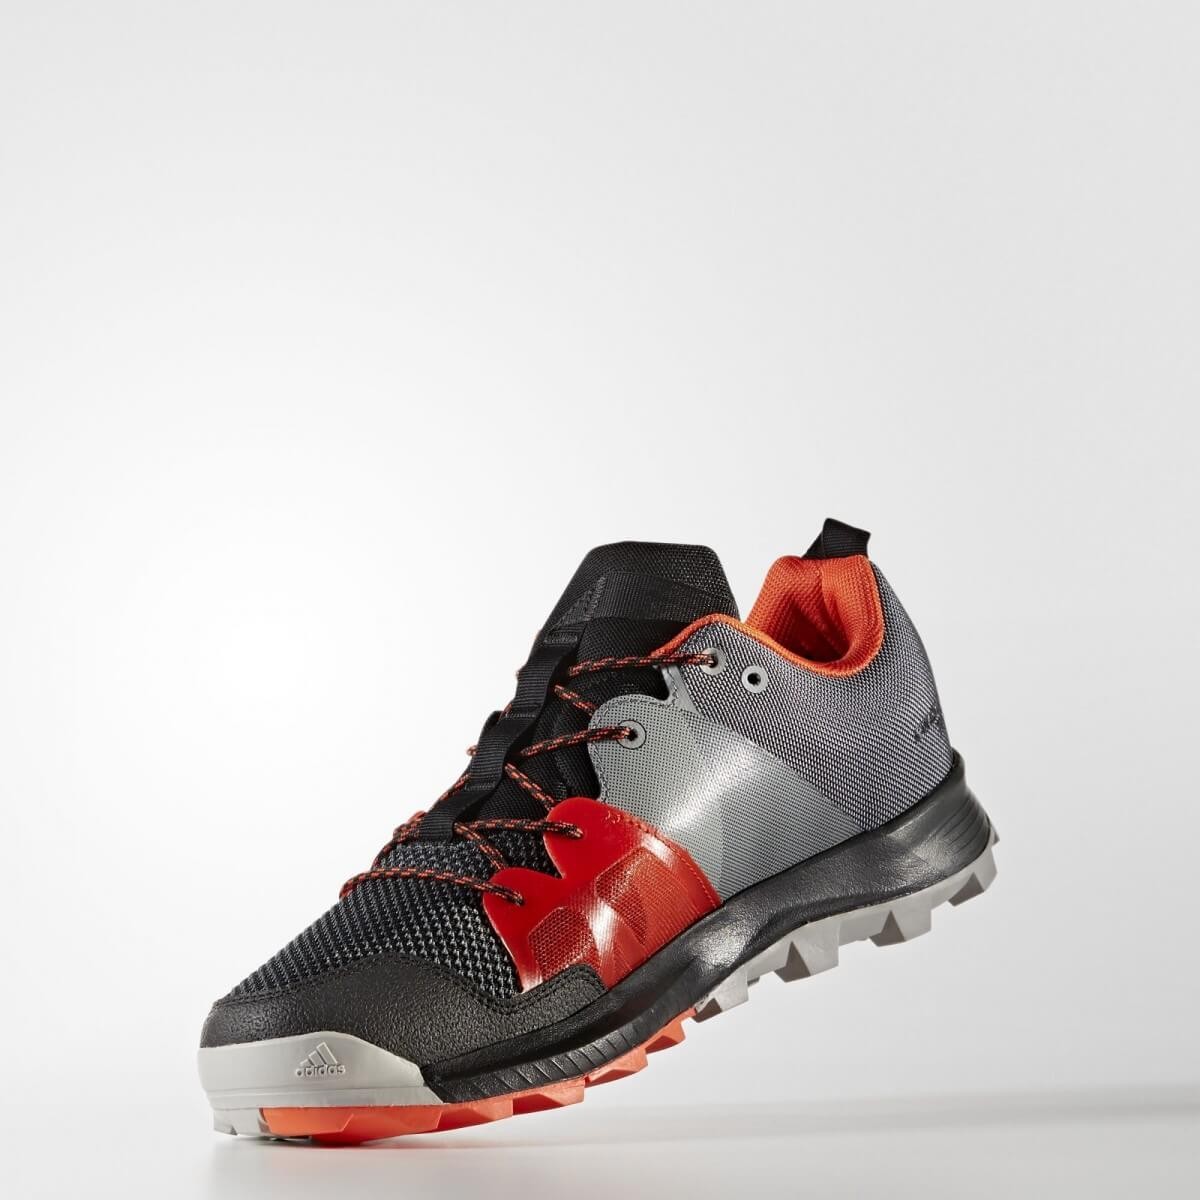 Adidas Kanadia 8.1 Trail Running Shoes black / - AW17 Men